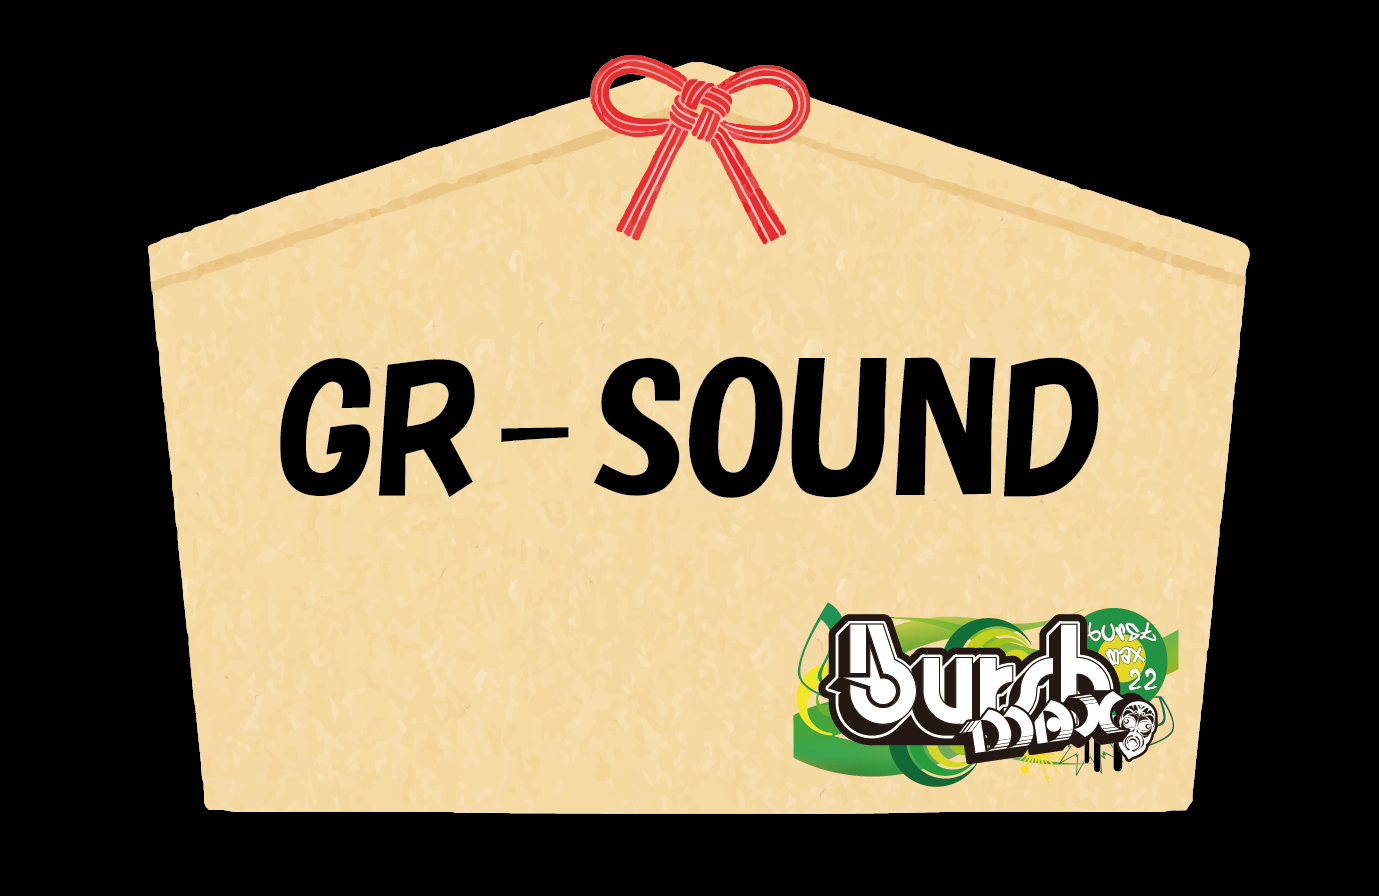 GR-SOUND